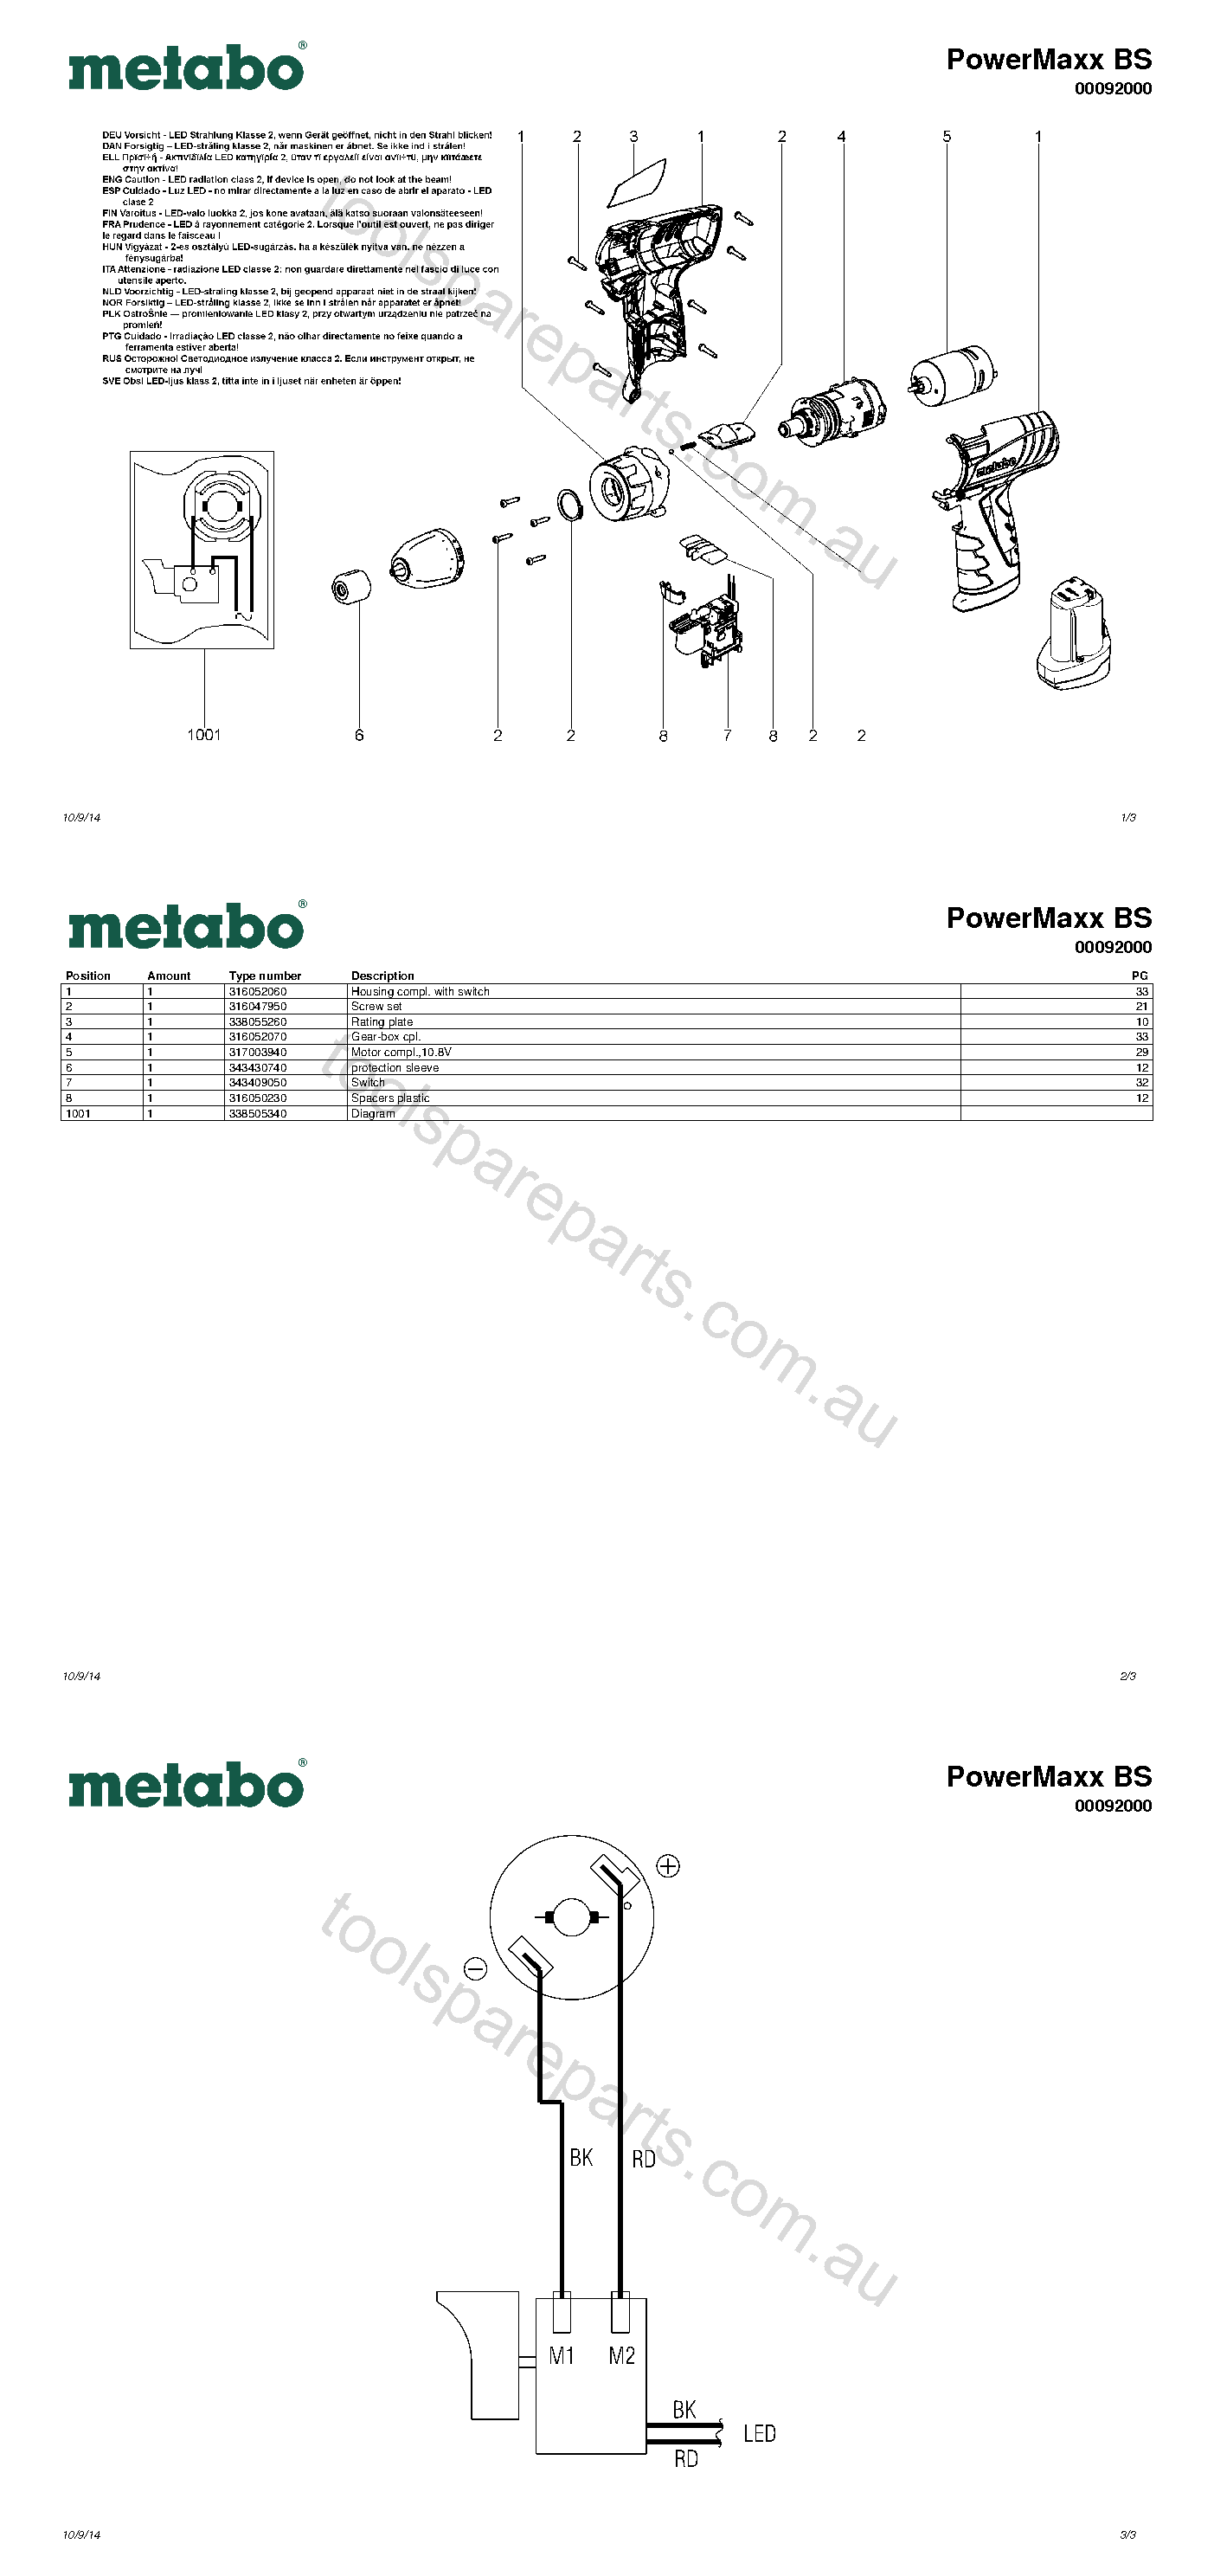 Metabo PowerMaxx BS 00092000  Diagram 1